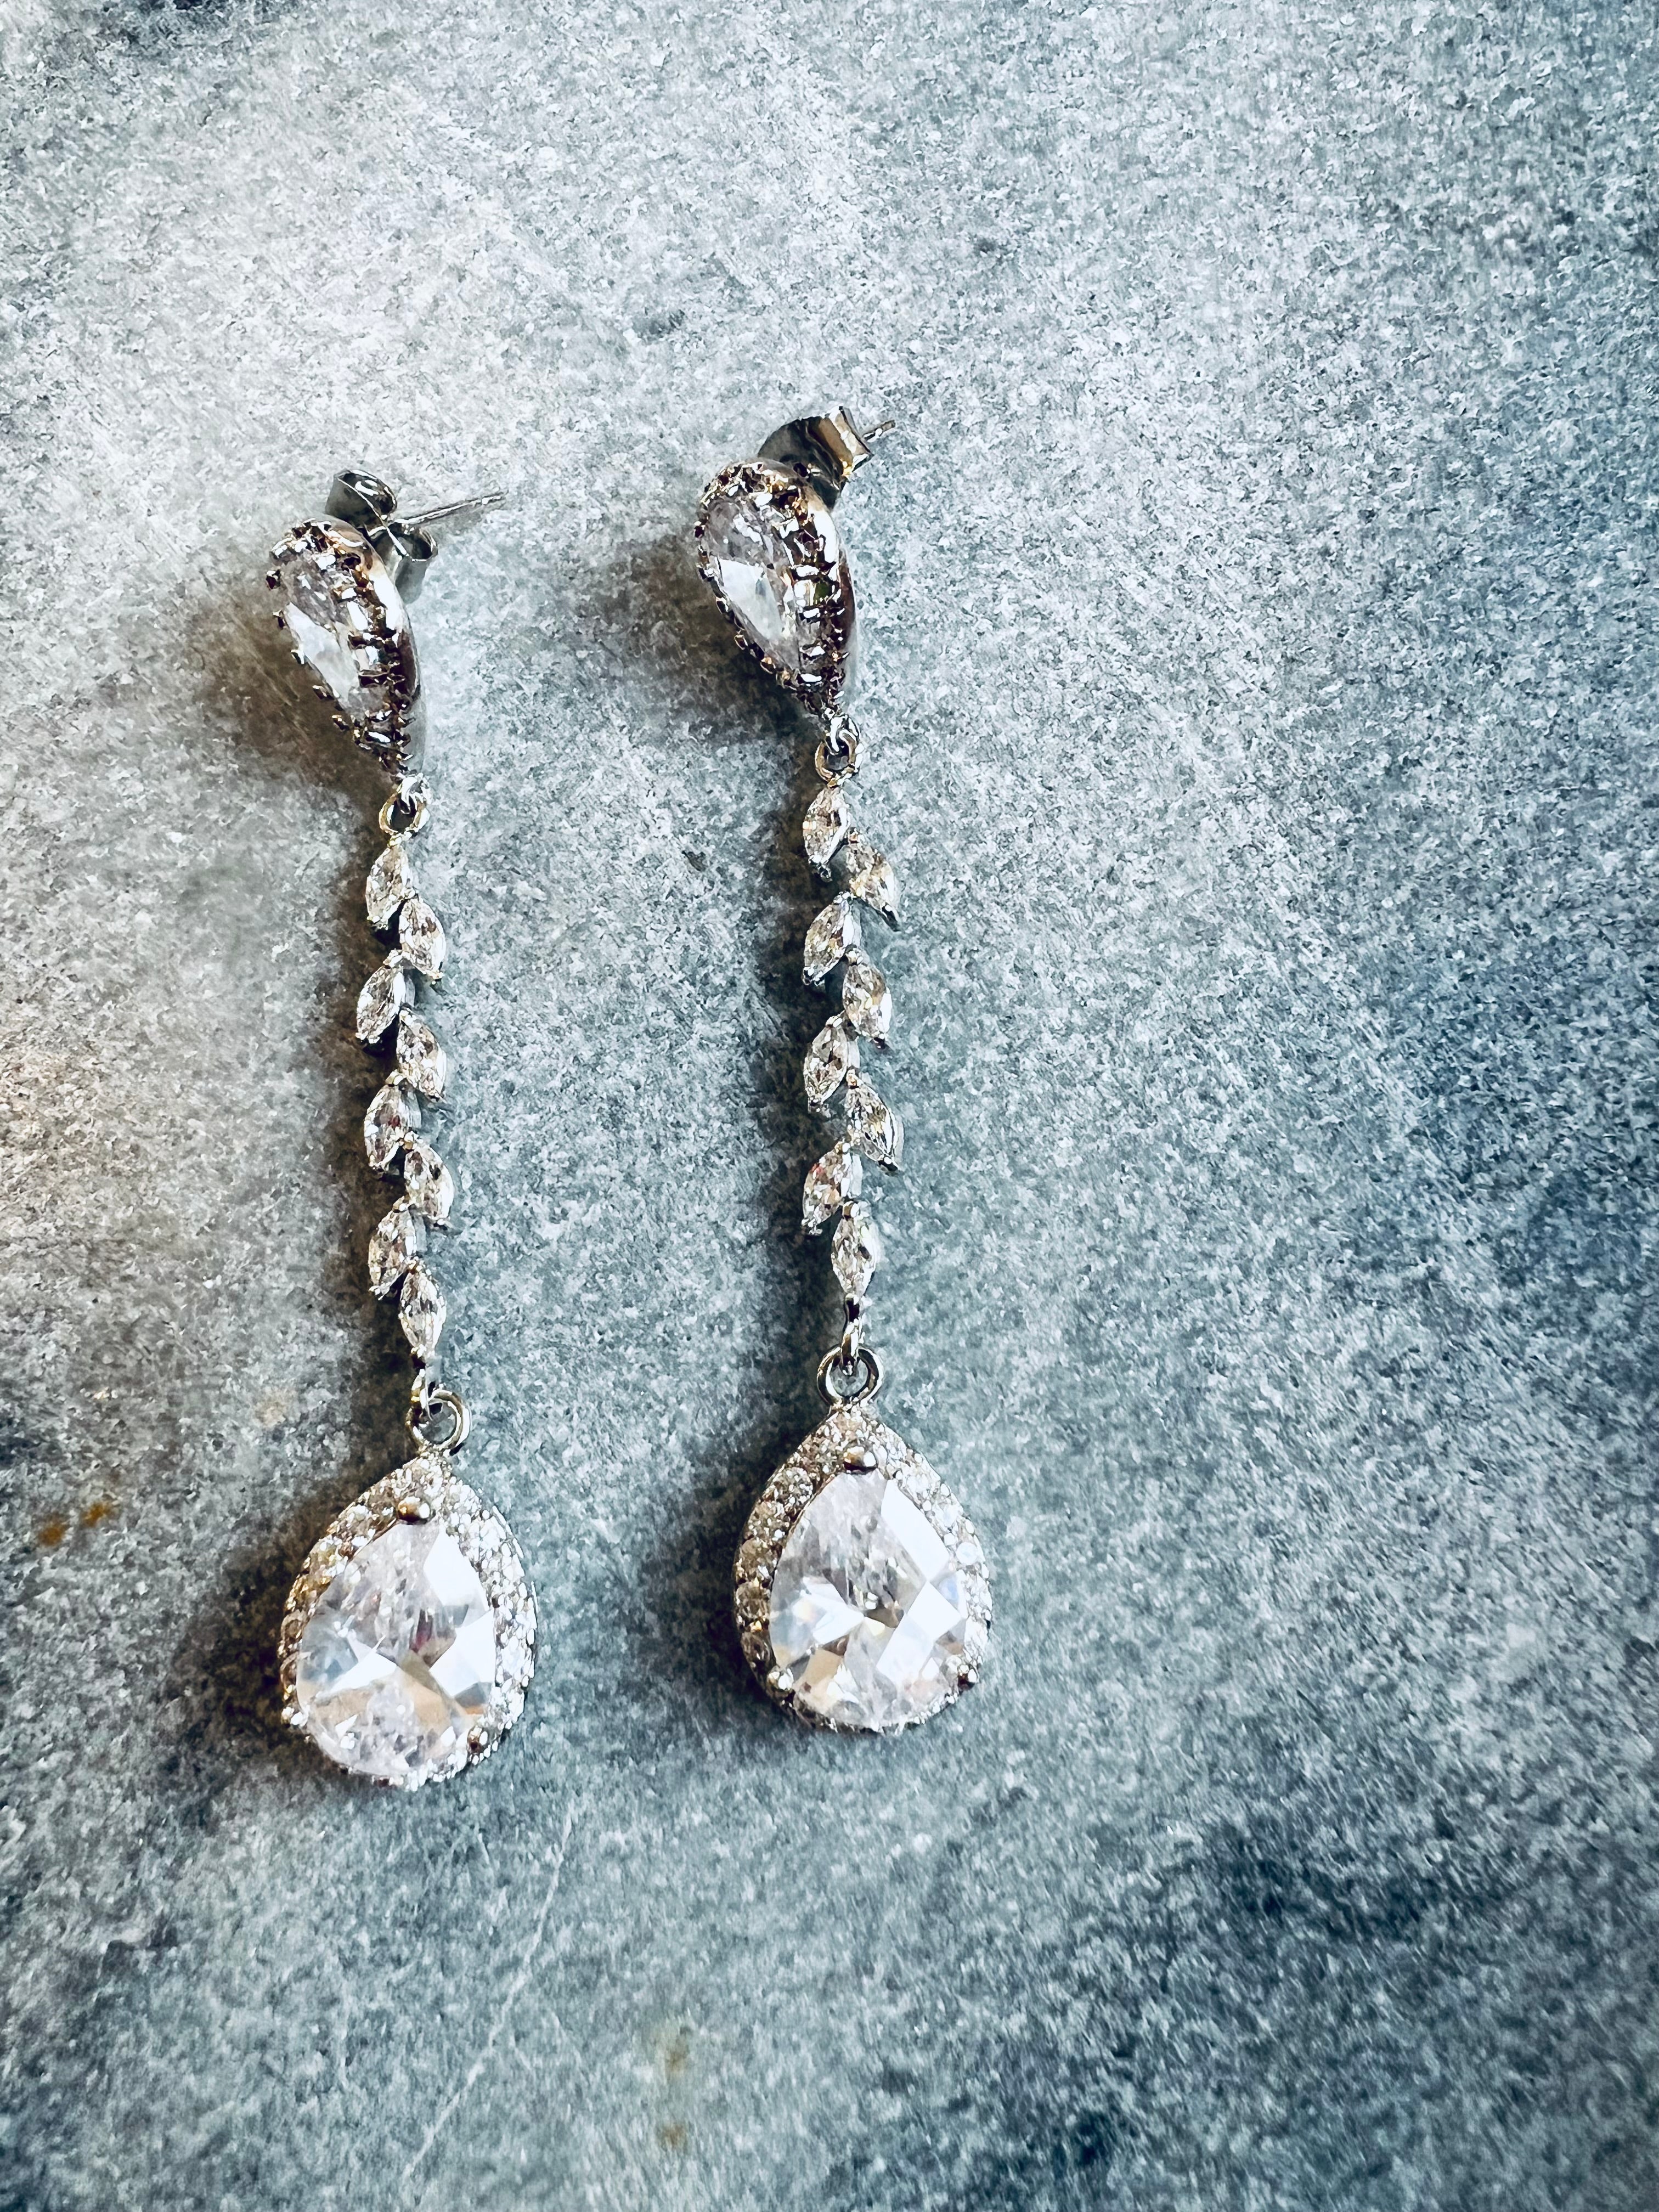 Silver Vintage Zirconia Dangle Drop Earrings